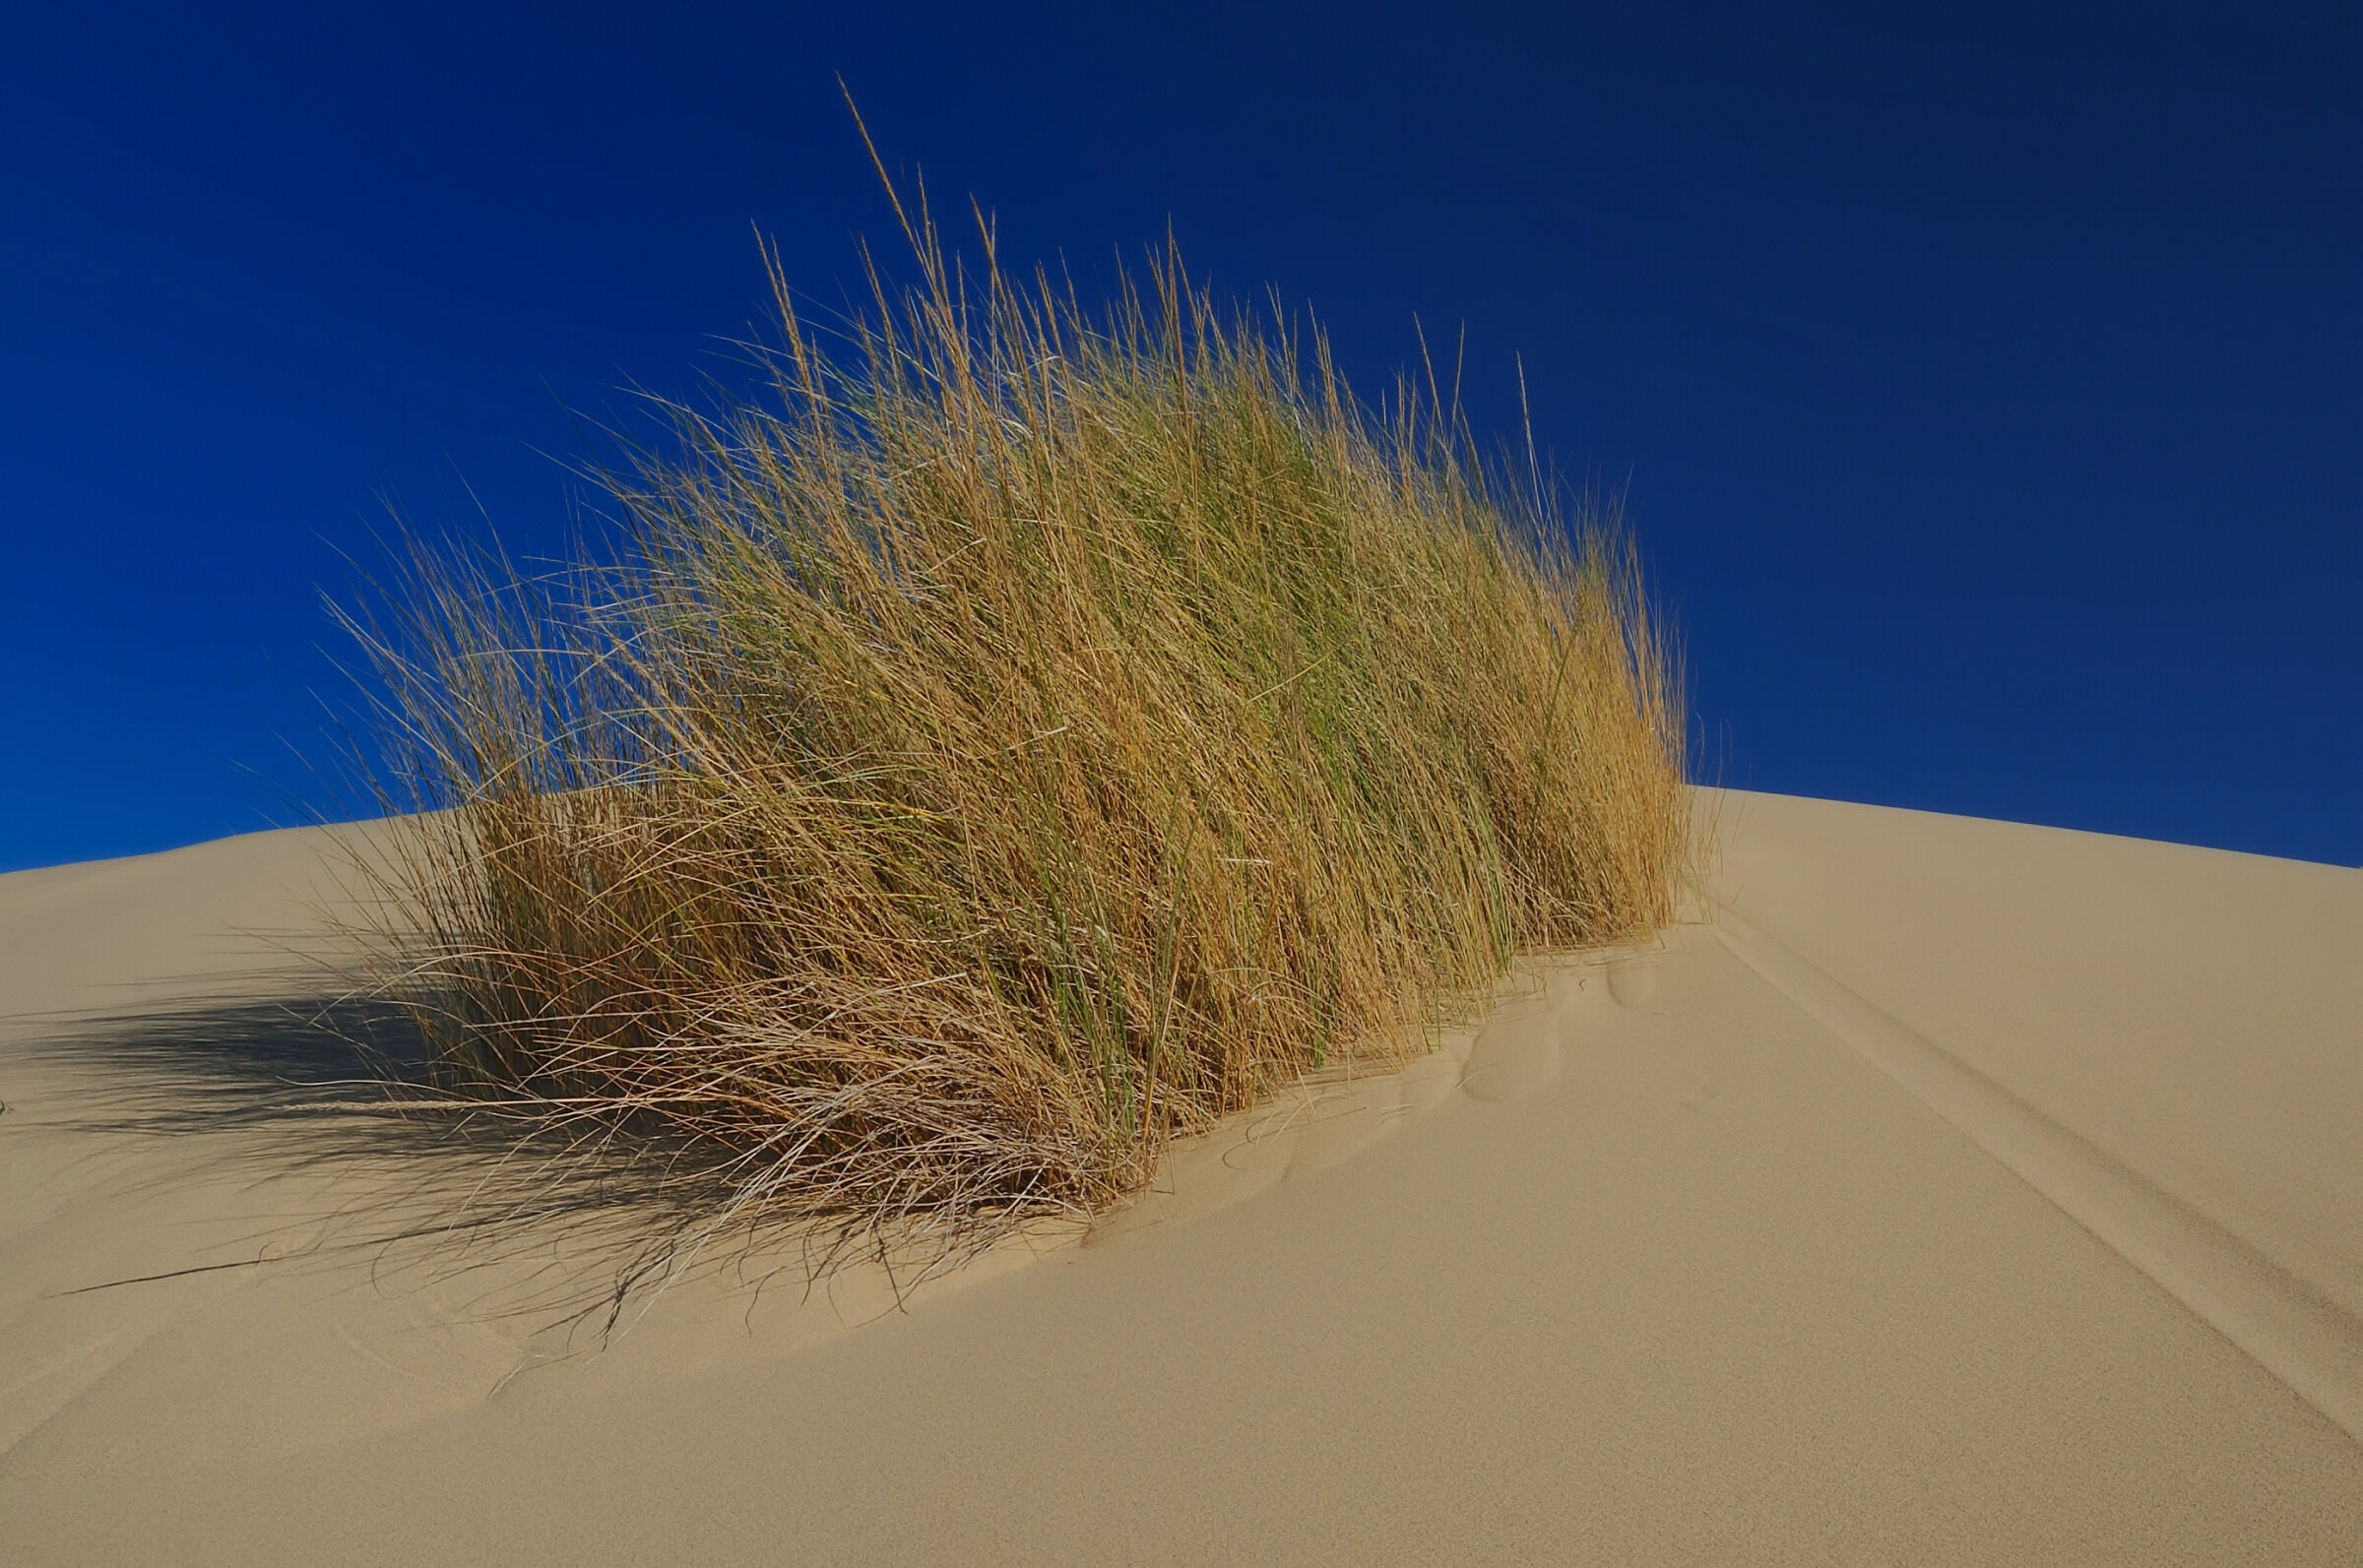 Dunes of Piscinas - Costa Verde Arbus...